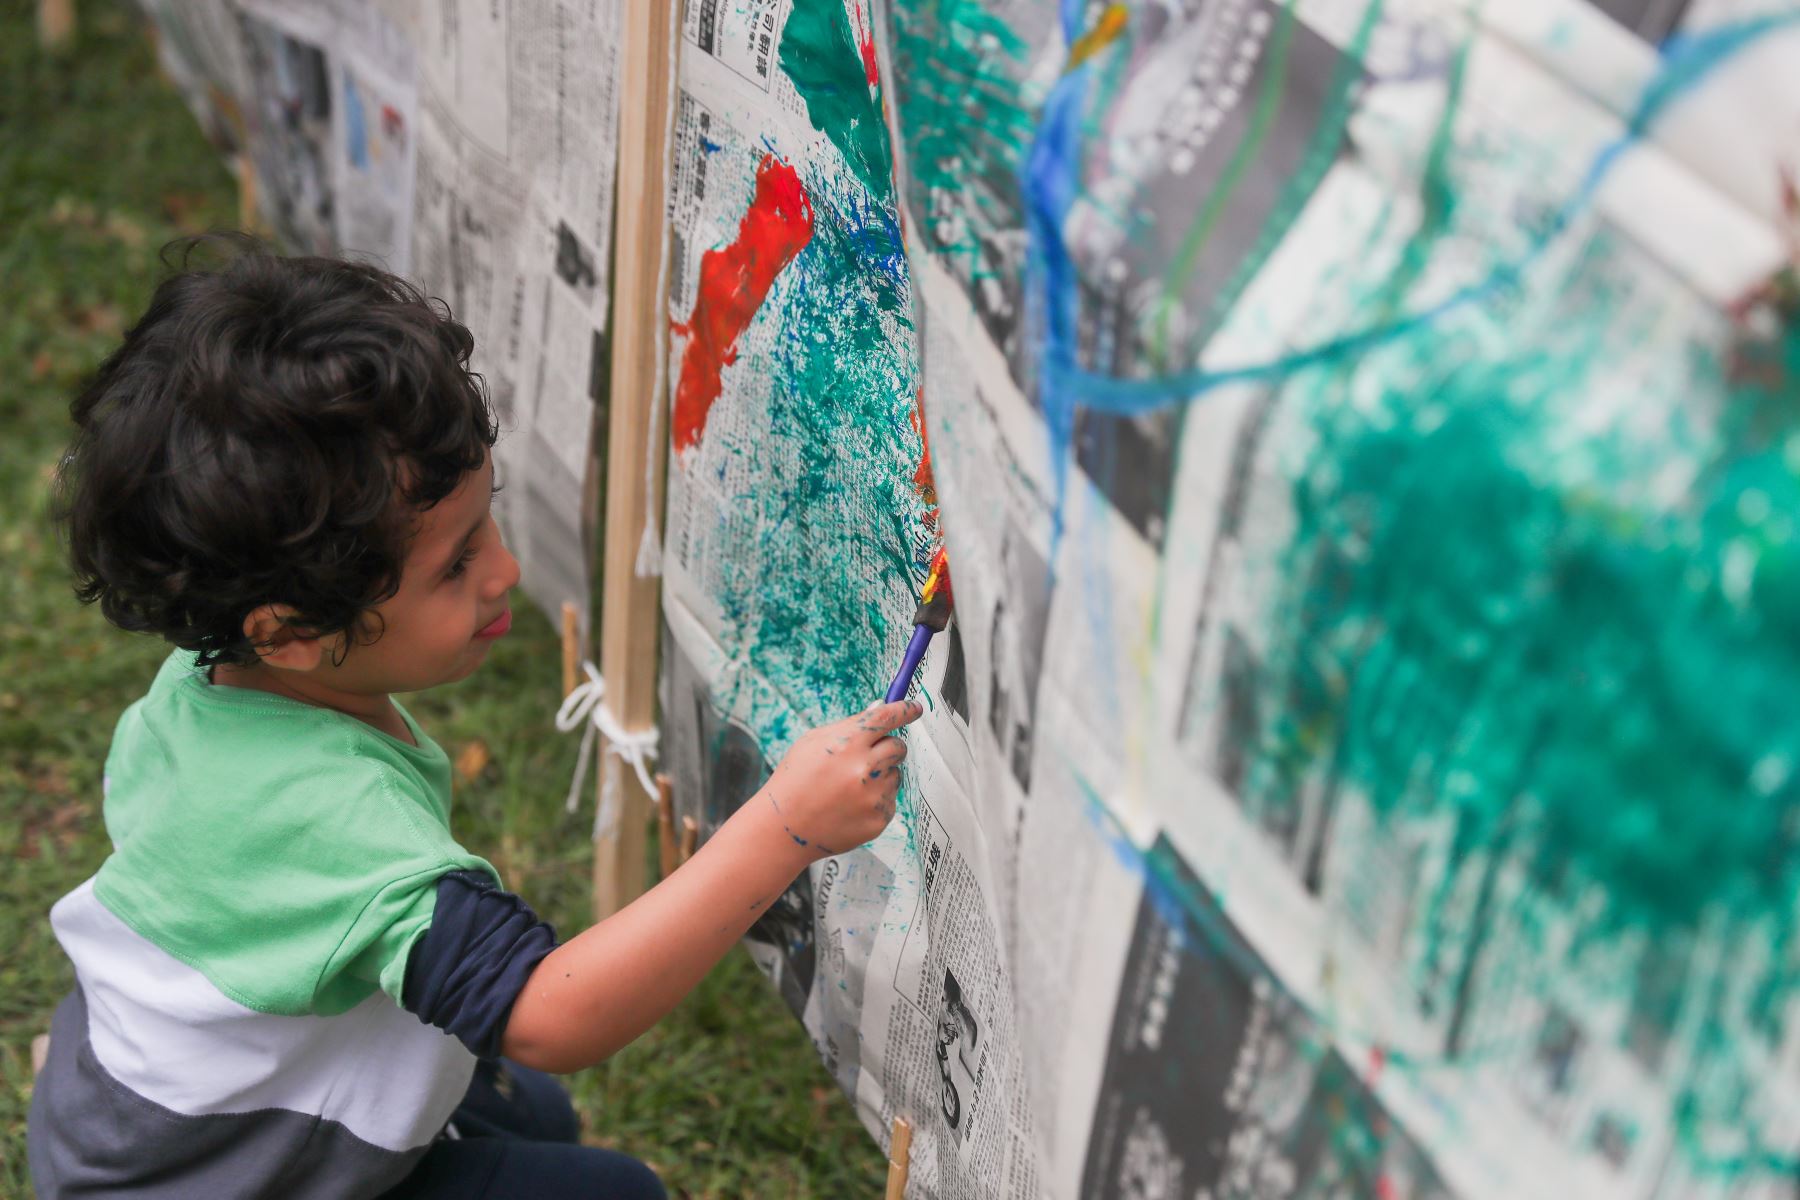 Los 770 trabajos de dibujo y pintura realizados por estos niños muestran sus habilidades en diferentes técnicas como collage, cartulinas, cartones, madera, con pinceles, con sus propias manos, entre otras. 
Foto: ANDINA/Ricardo Cuba